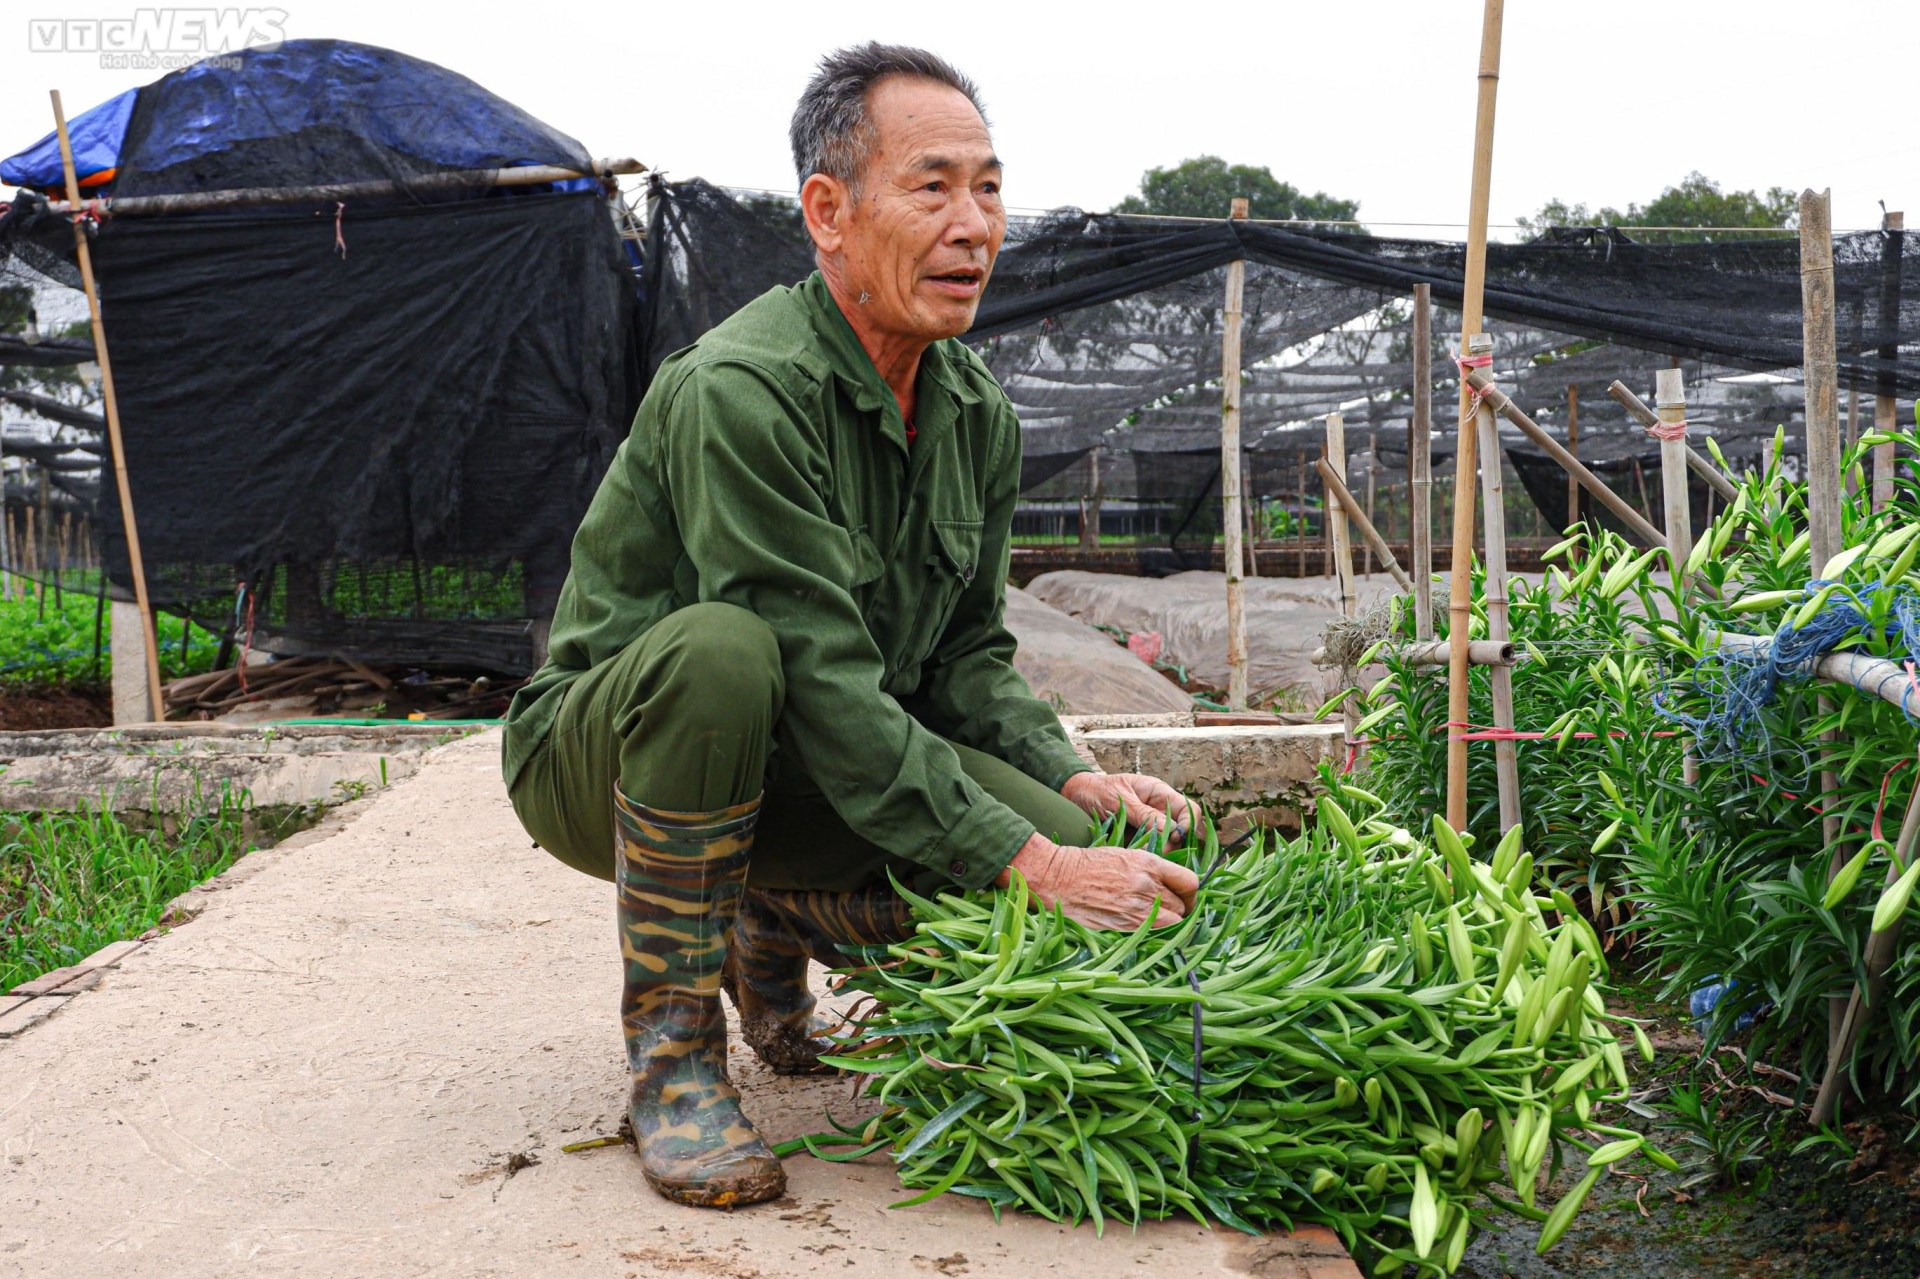 Hoa loa kèn vào vụ, nông dân ngoại thành Hà Nội thu chục triệu đồng mỗi ngày - 9